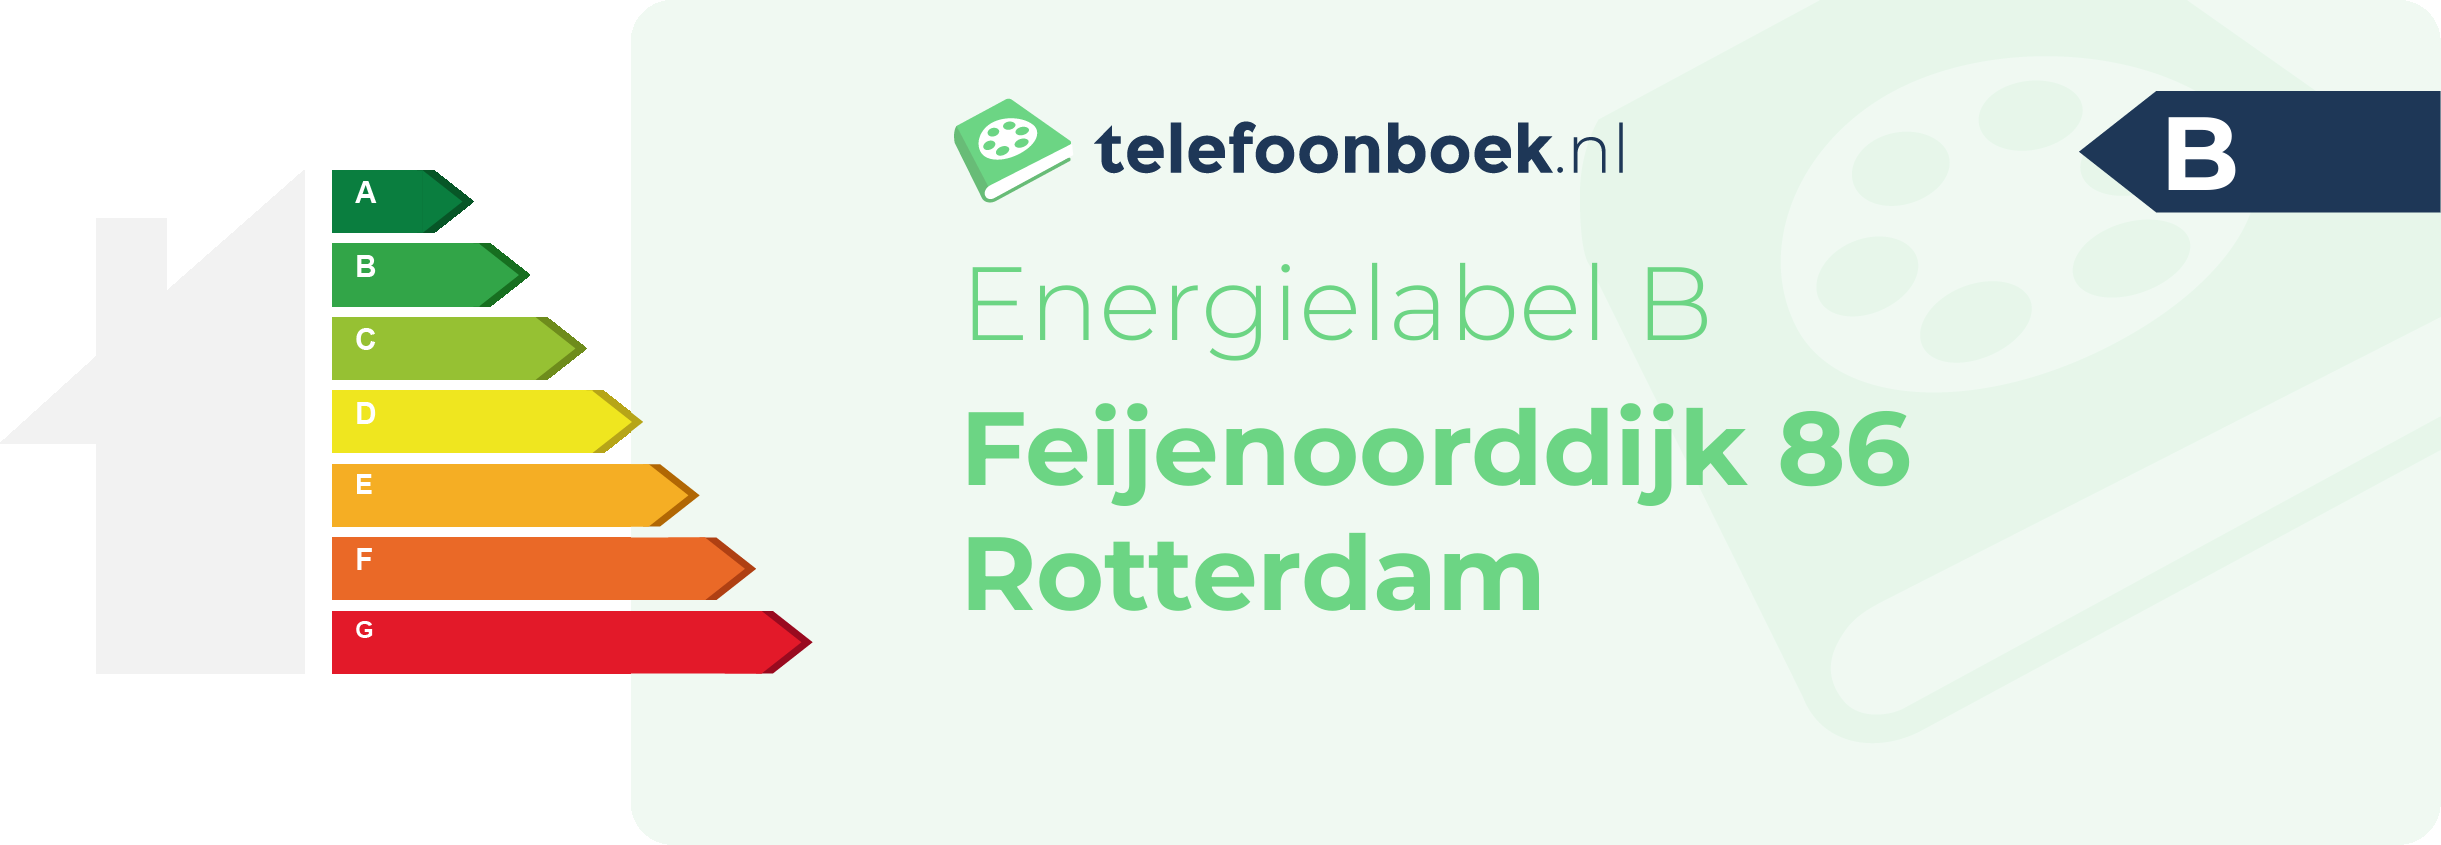 Energielabel Feijenoorddijk 86 Rotterdam